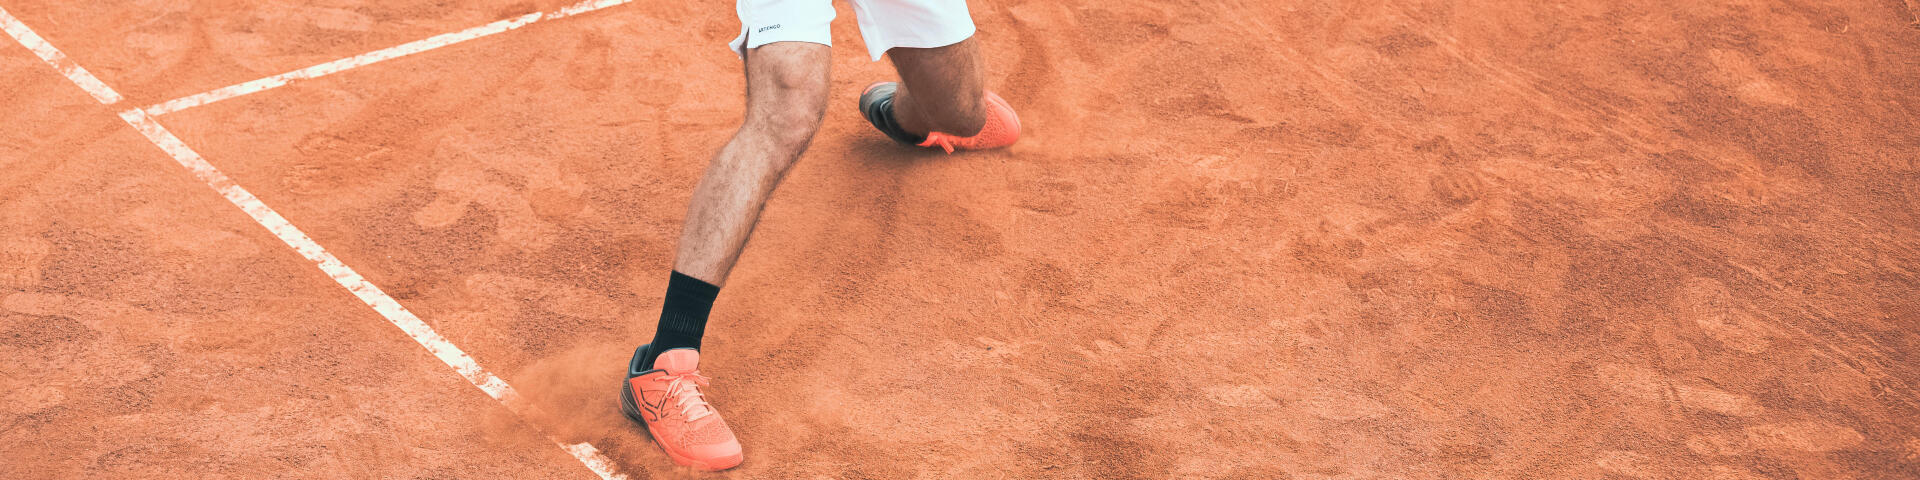 Tennis : quelles différences entre la terre battue et le gazon ?